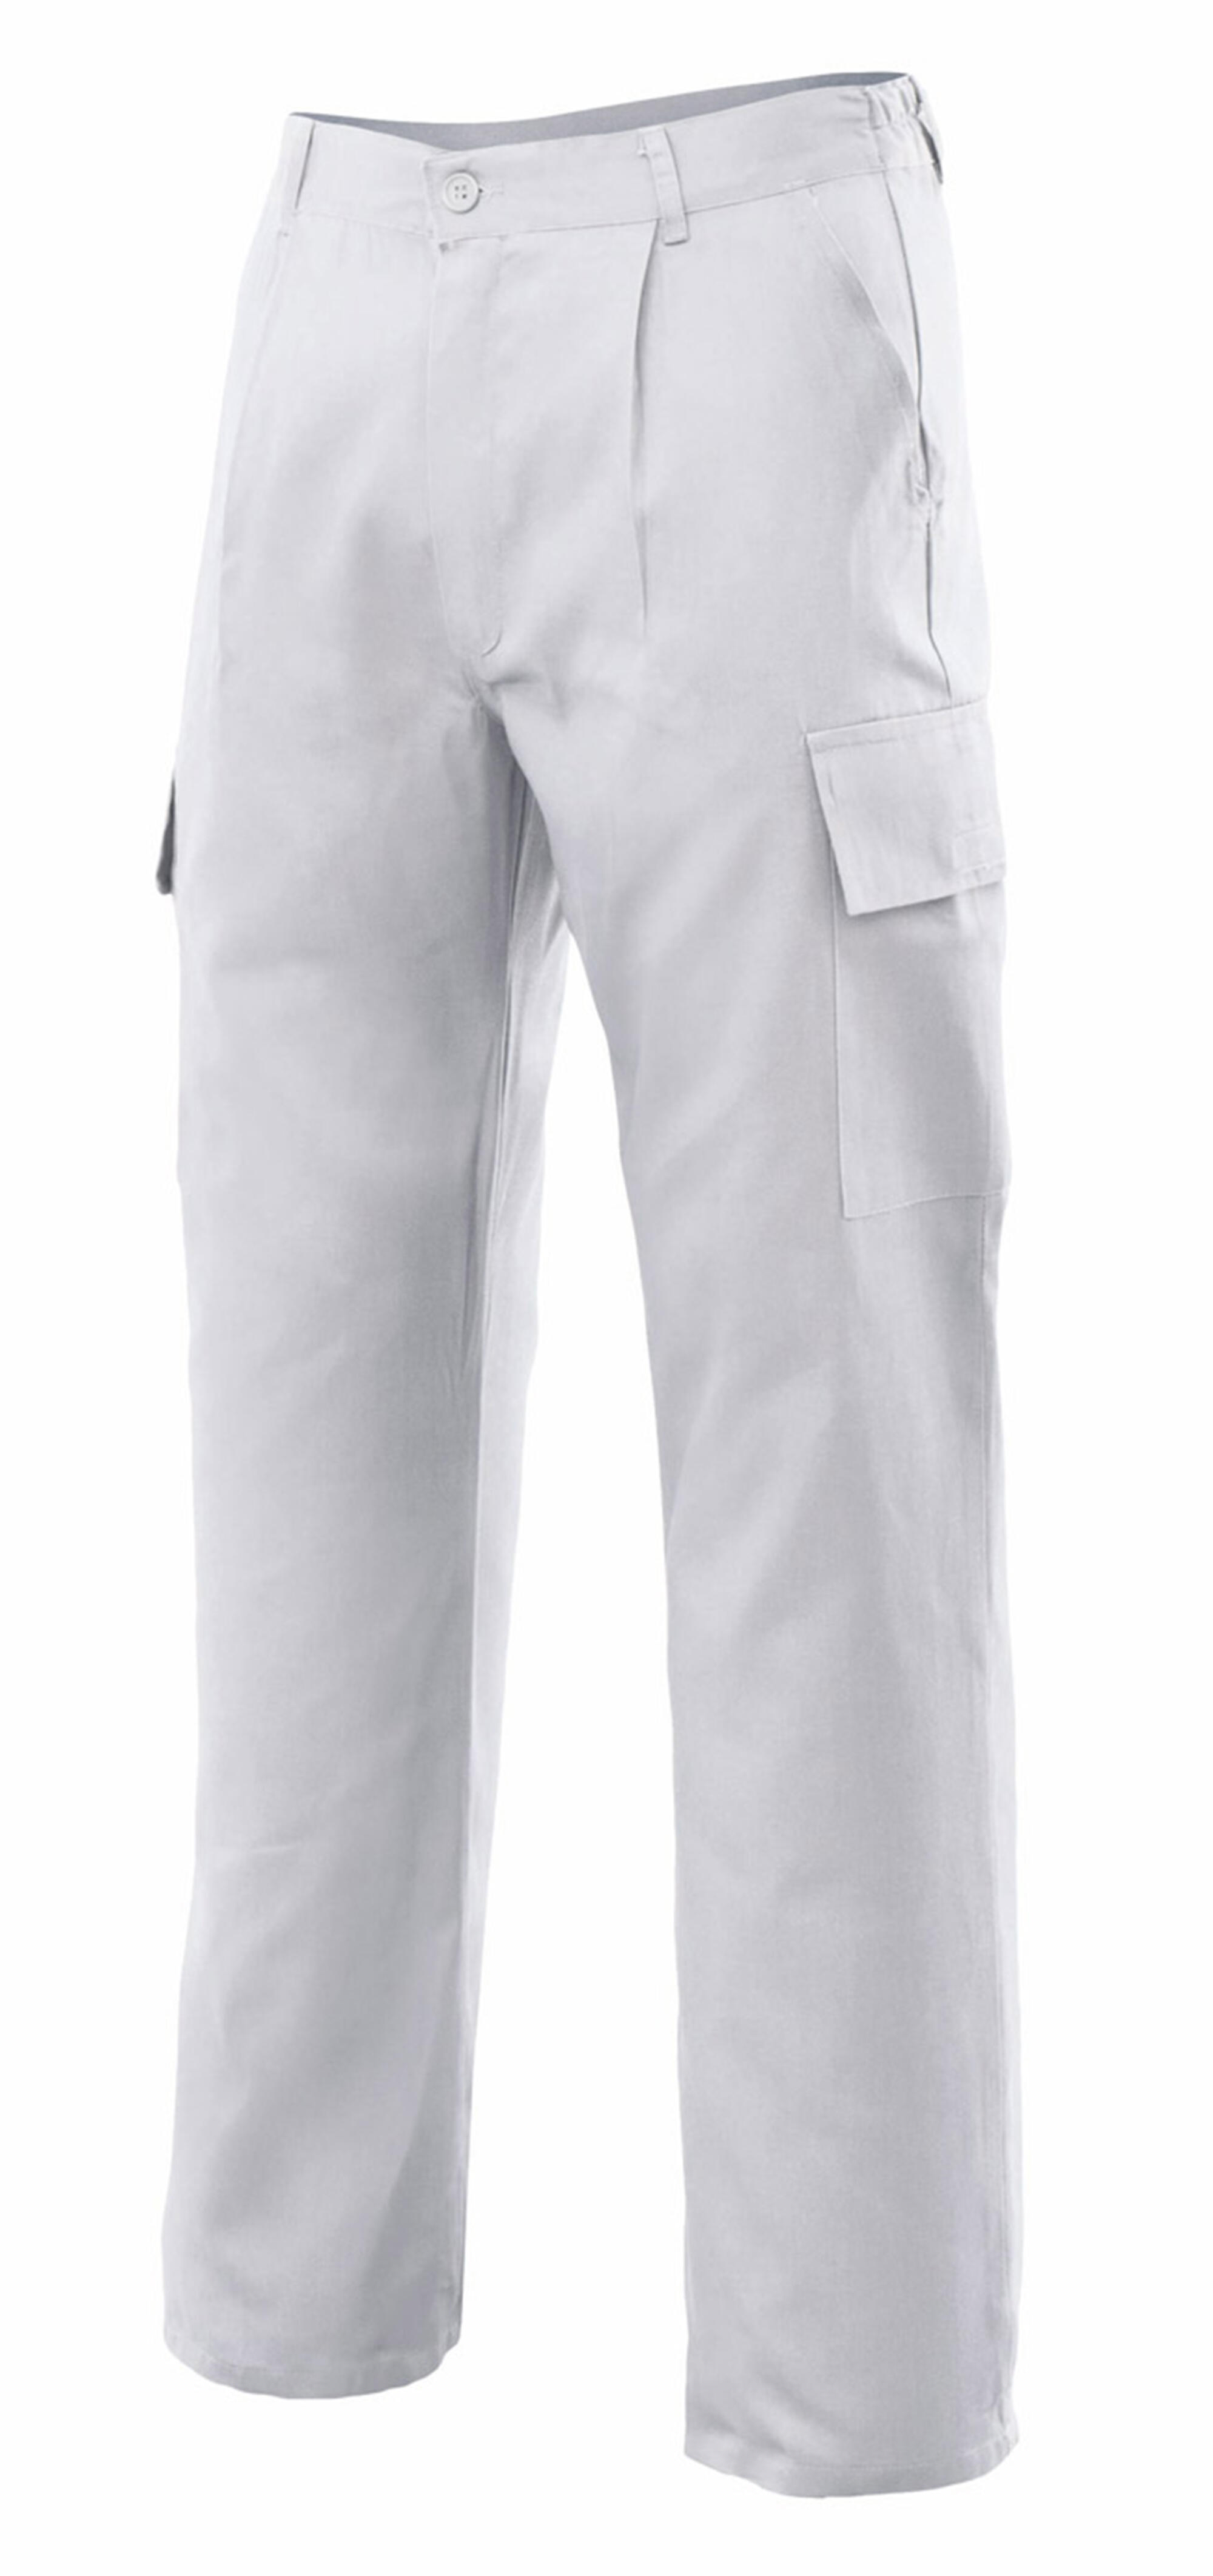 Pantalon de trabajo vertice multibolsillo blanco t48